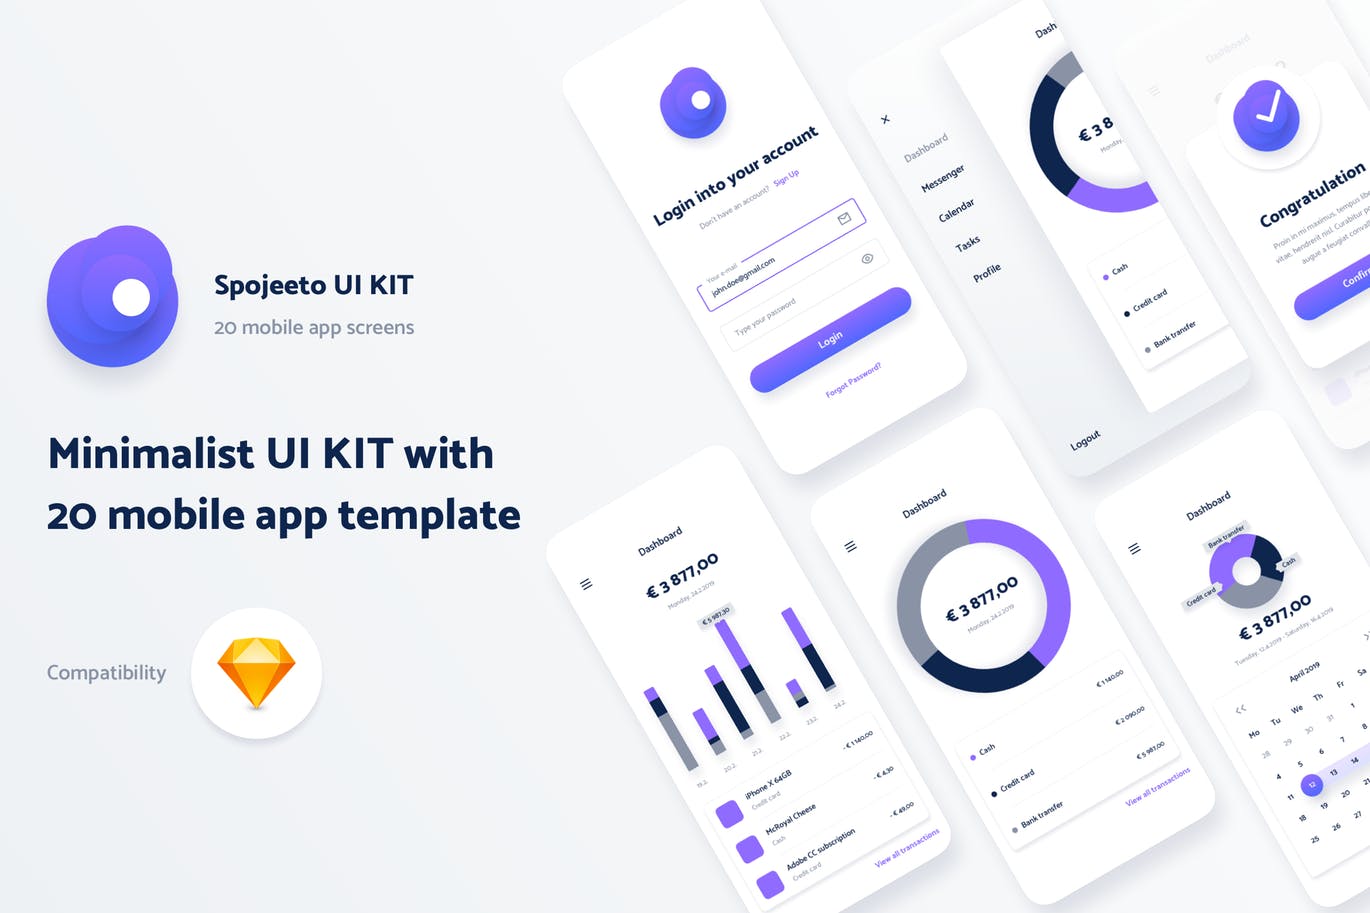 极简主义设计风格APP应用UI设计第一素材精选套件v1 Spojeeto Mobile App UI Kit插图